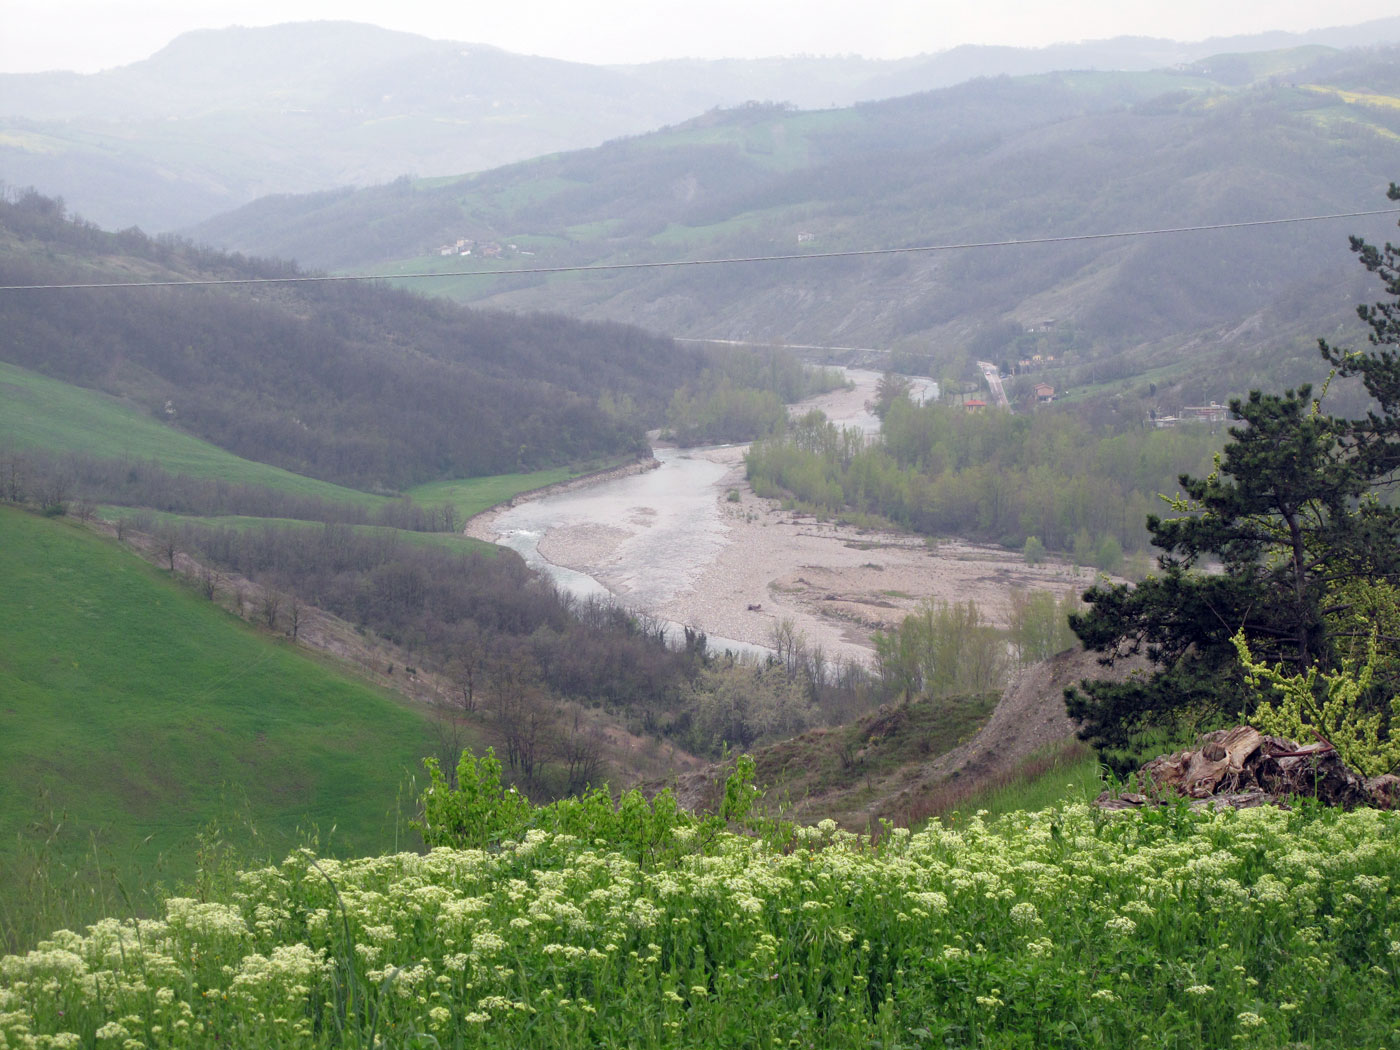 Il fiume Panaro, visto dalle colline sopra la riva destra, quella investita dalla battaglia di Pieve di Trebbio